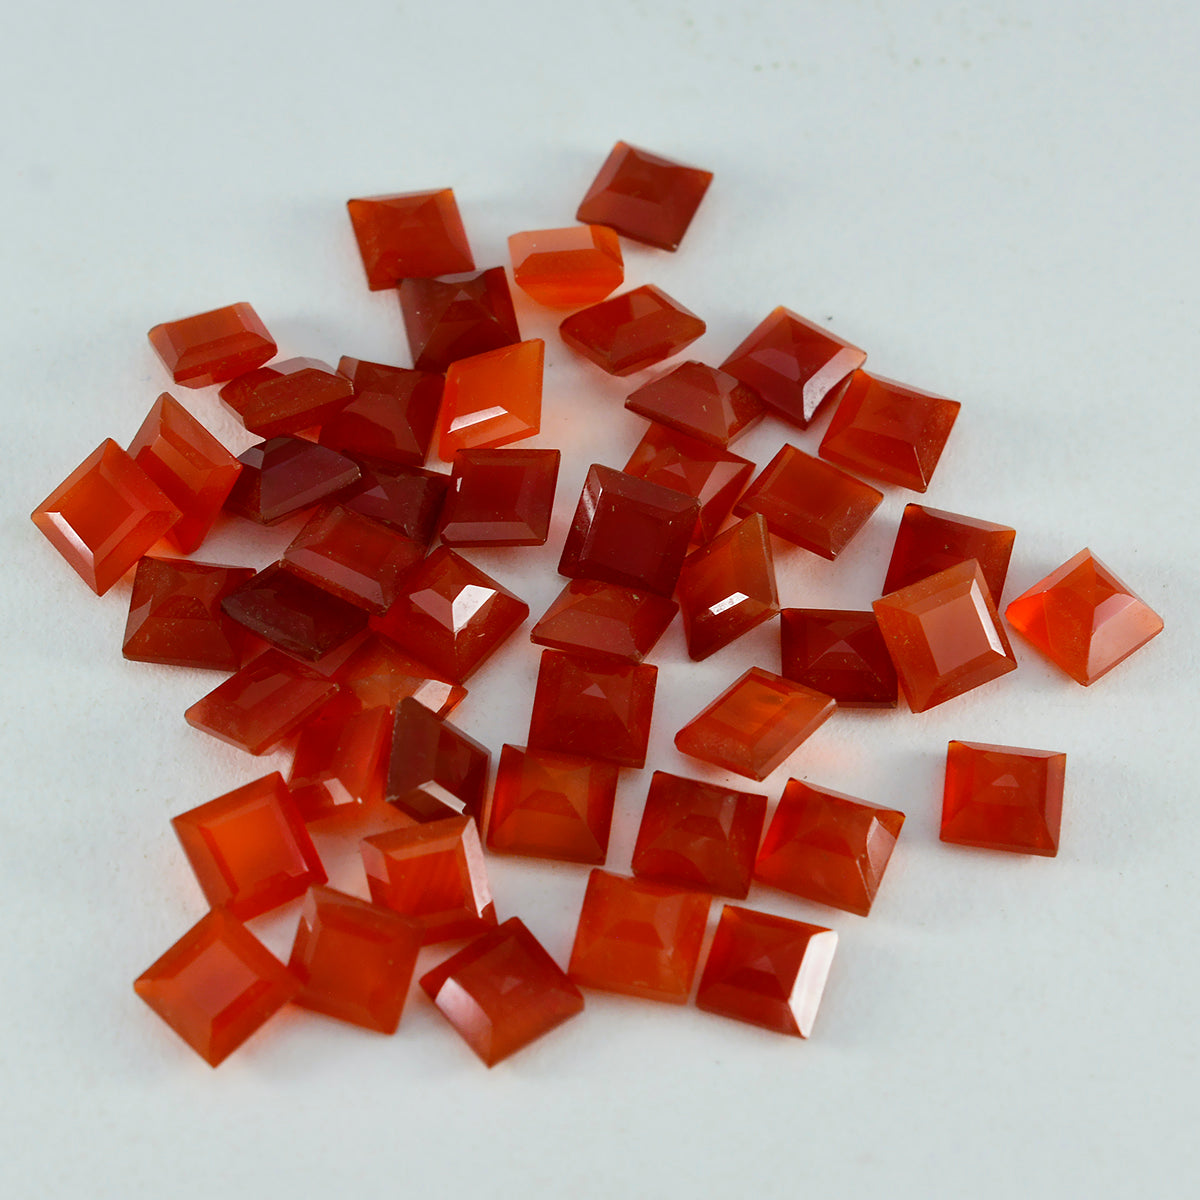 riyogems 1 шт. натуральный красный оникс ограненный 5x5 мм квадратной формы красивые качественные драгоценные камни